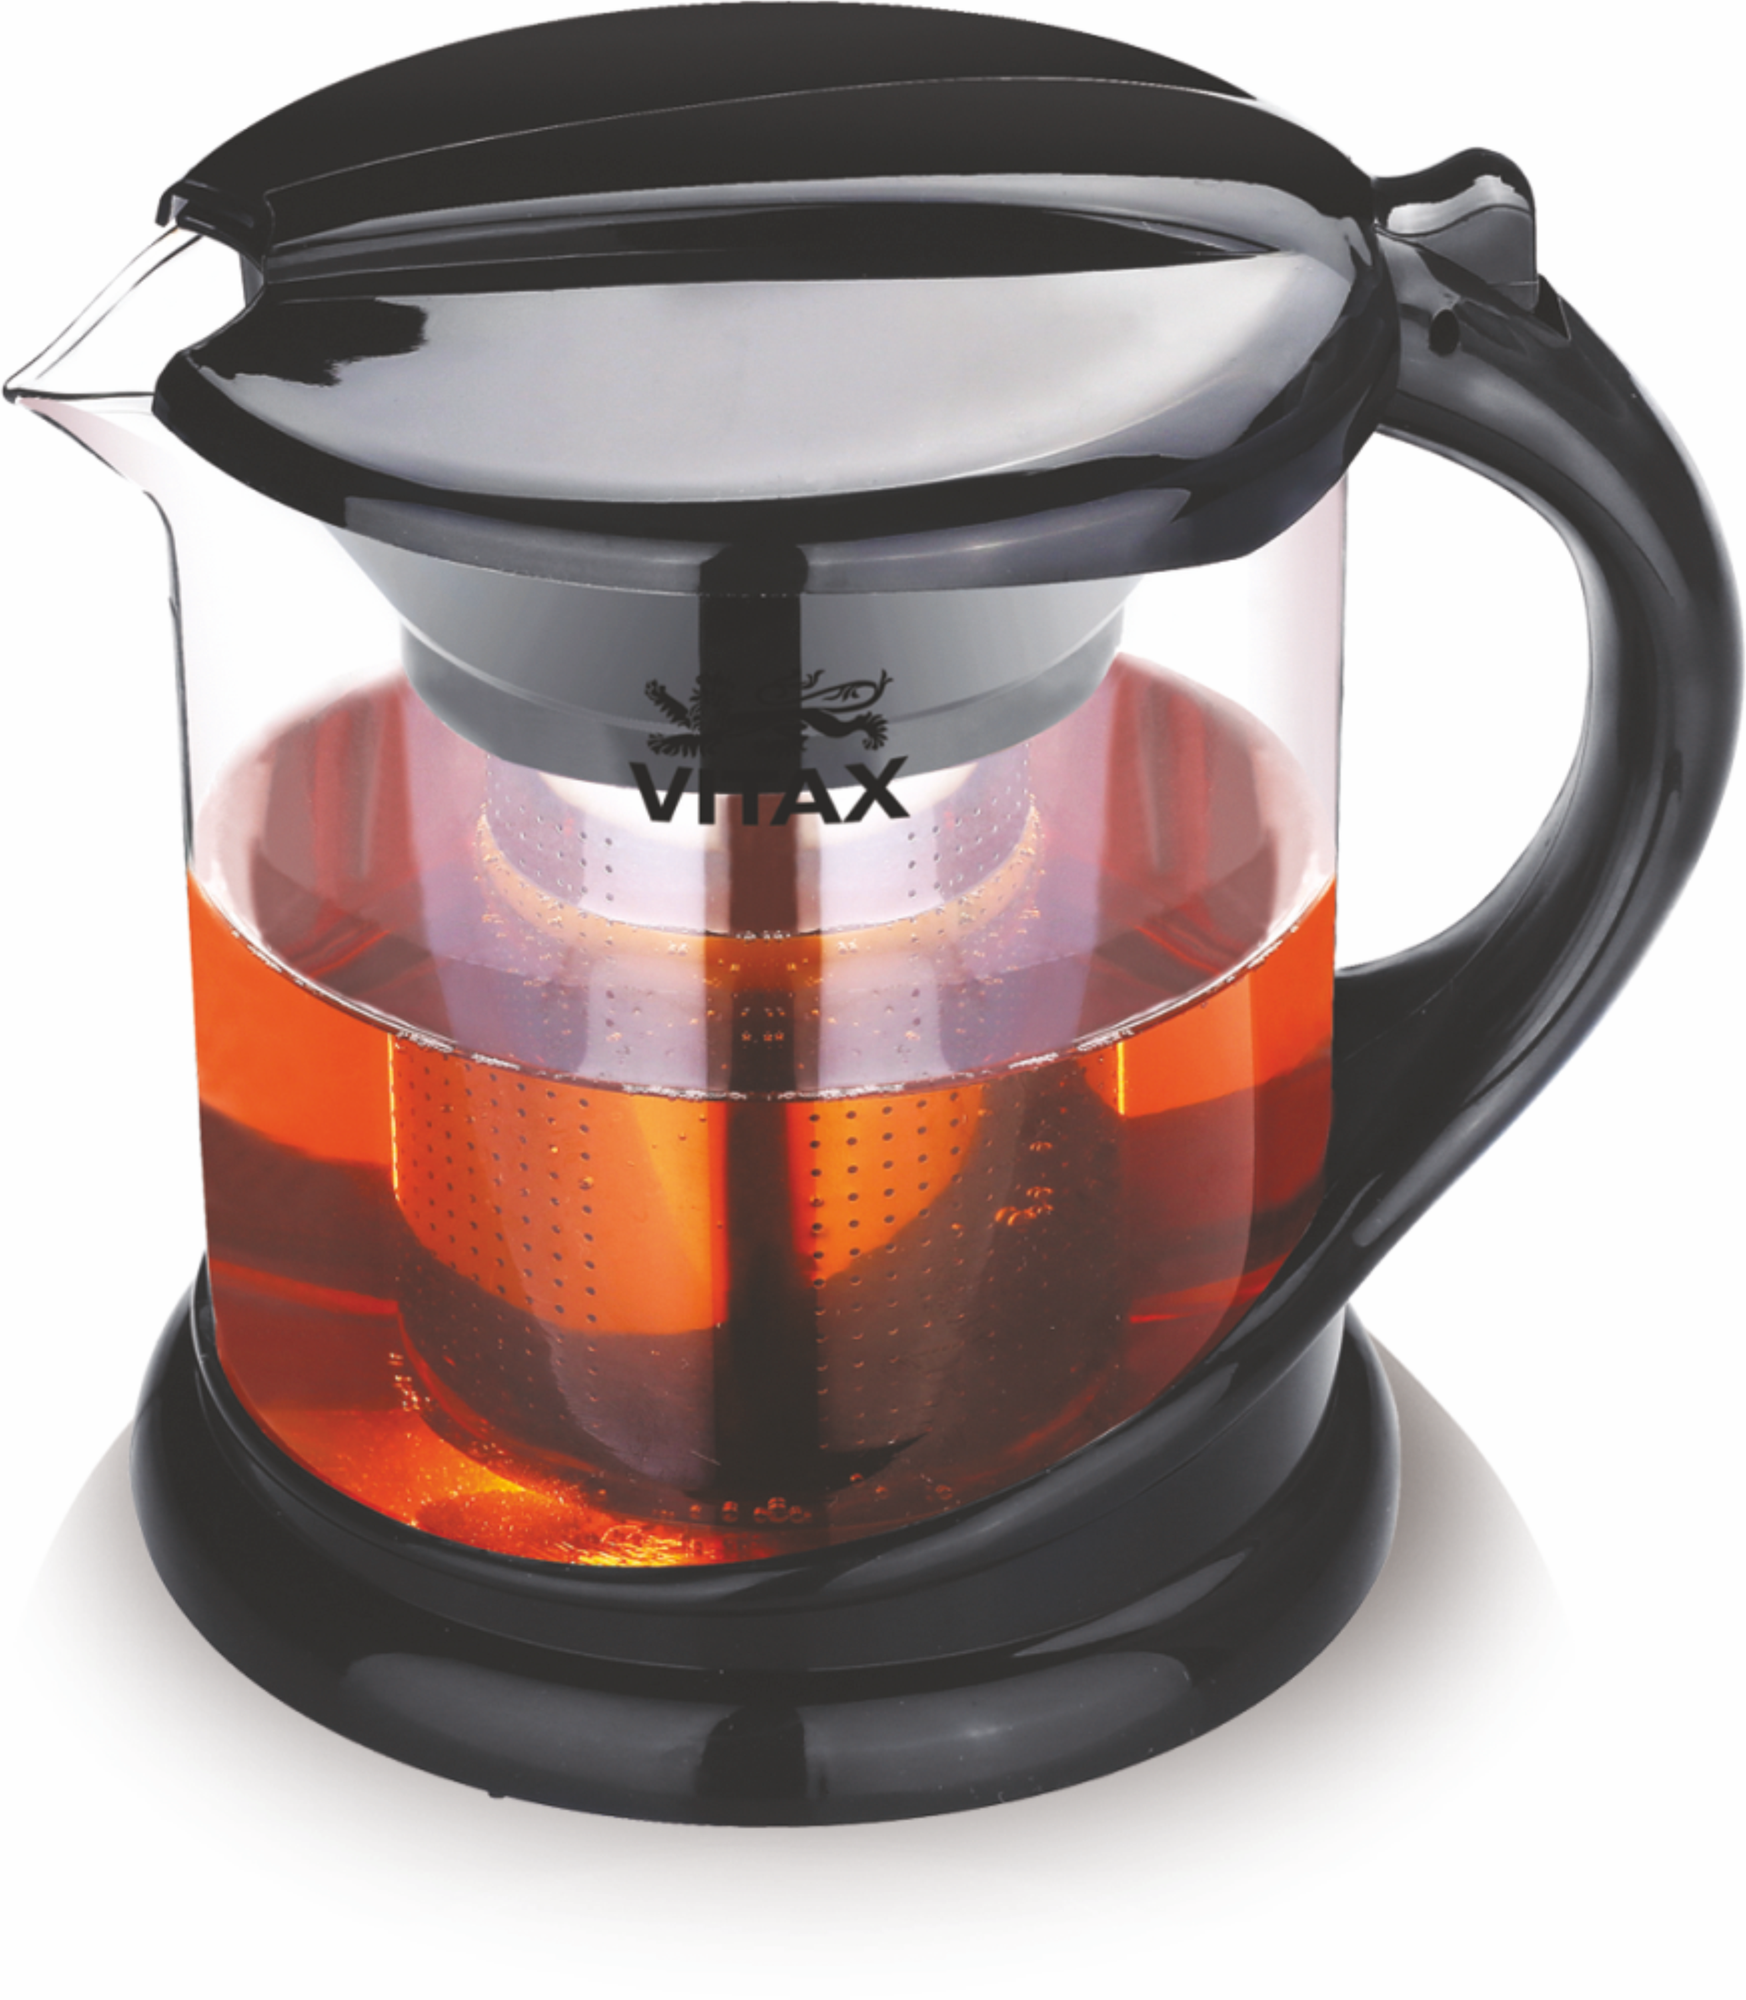 Чайник заварочный Vitax из жаропрочного стекла с ситечком, для заваривания чая и трав объемом 1 литр.